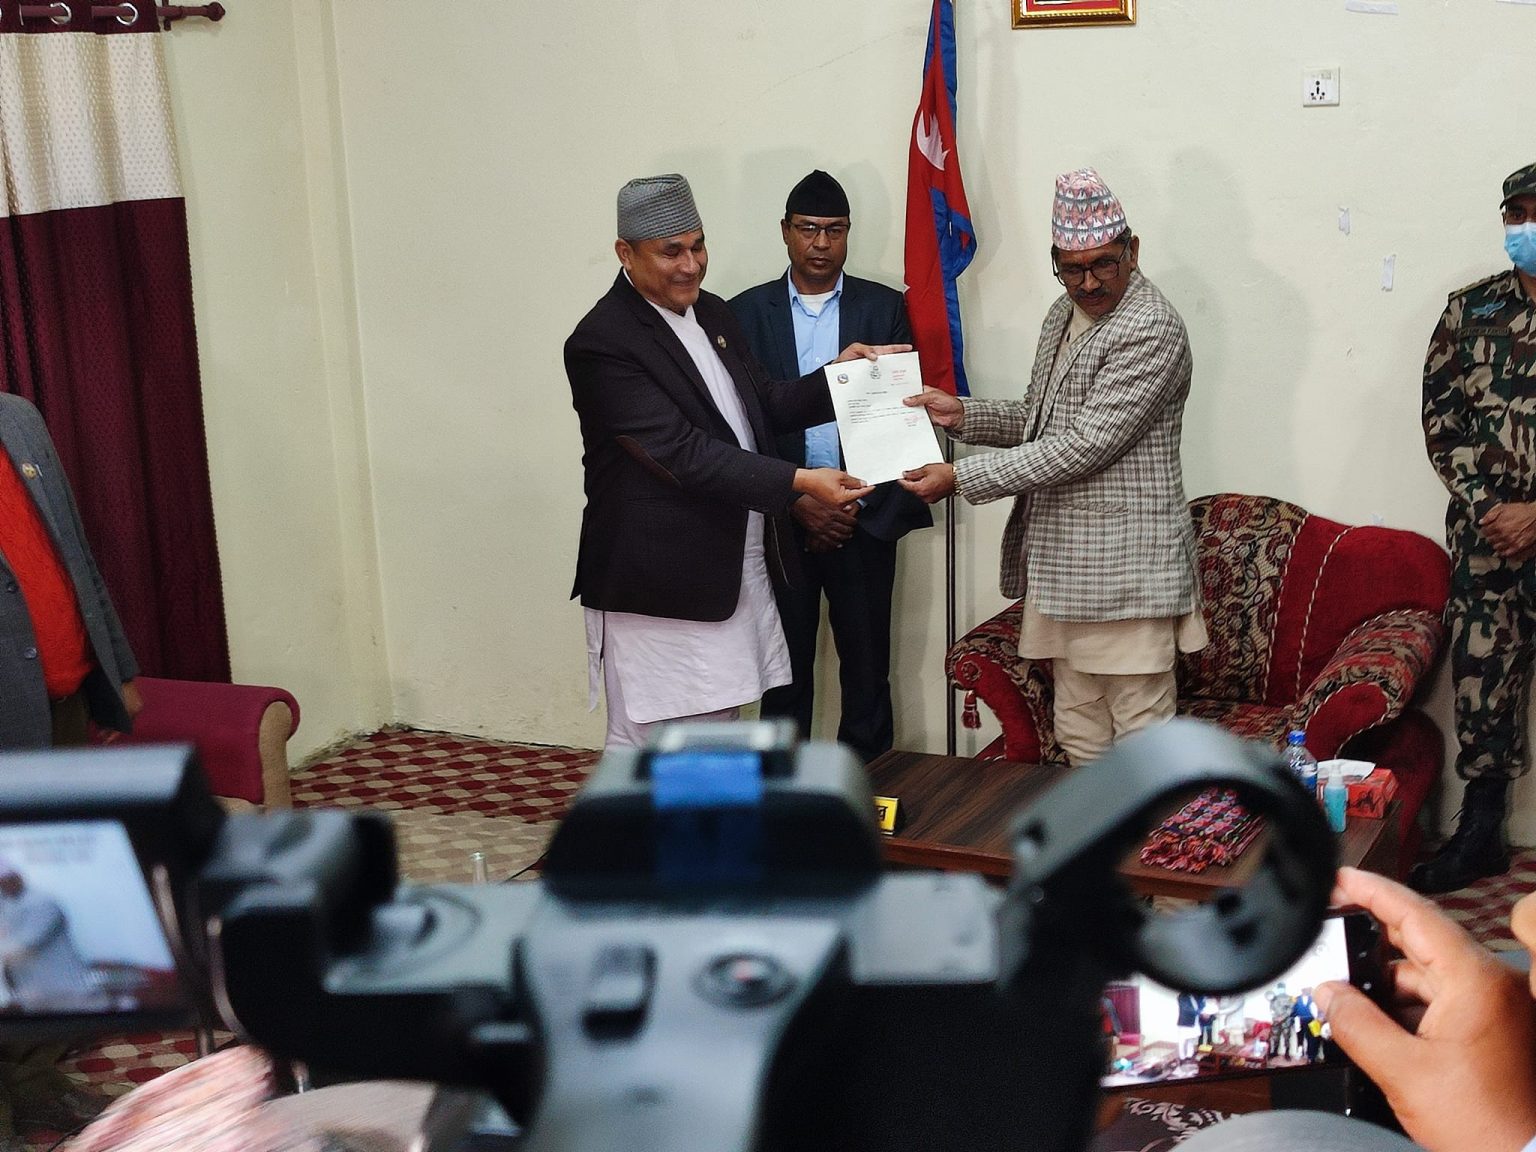 सुदूरपश्चिमको मुख्यमन्त्रीमा नेपाली काँग्रेसका कमलबहादुर शाह नियुक्त